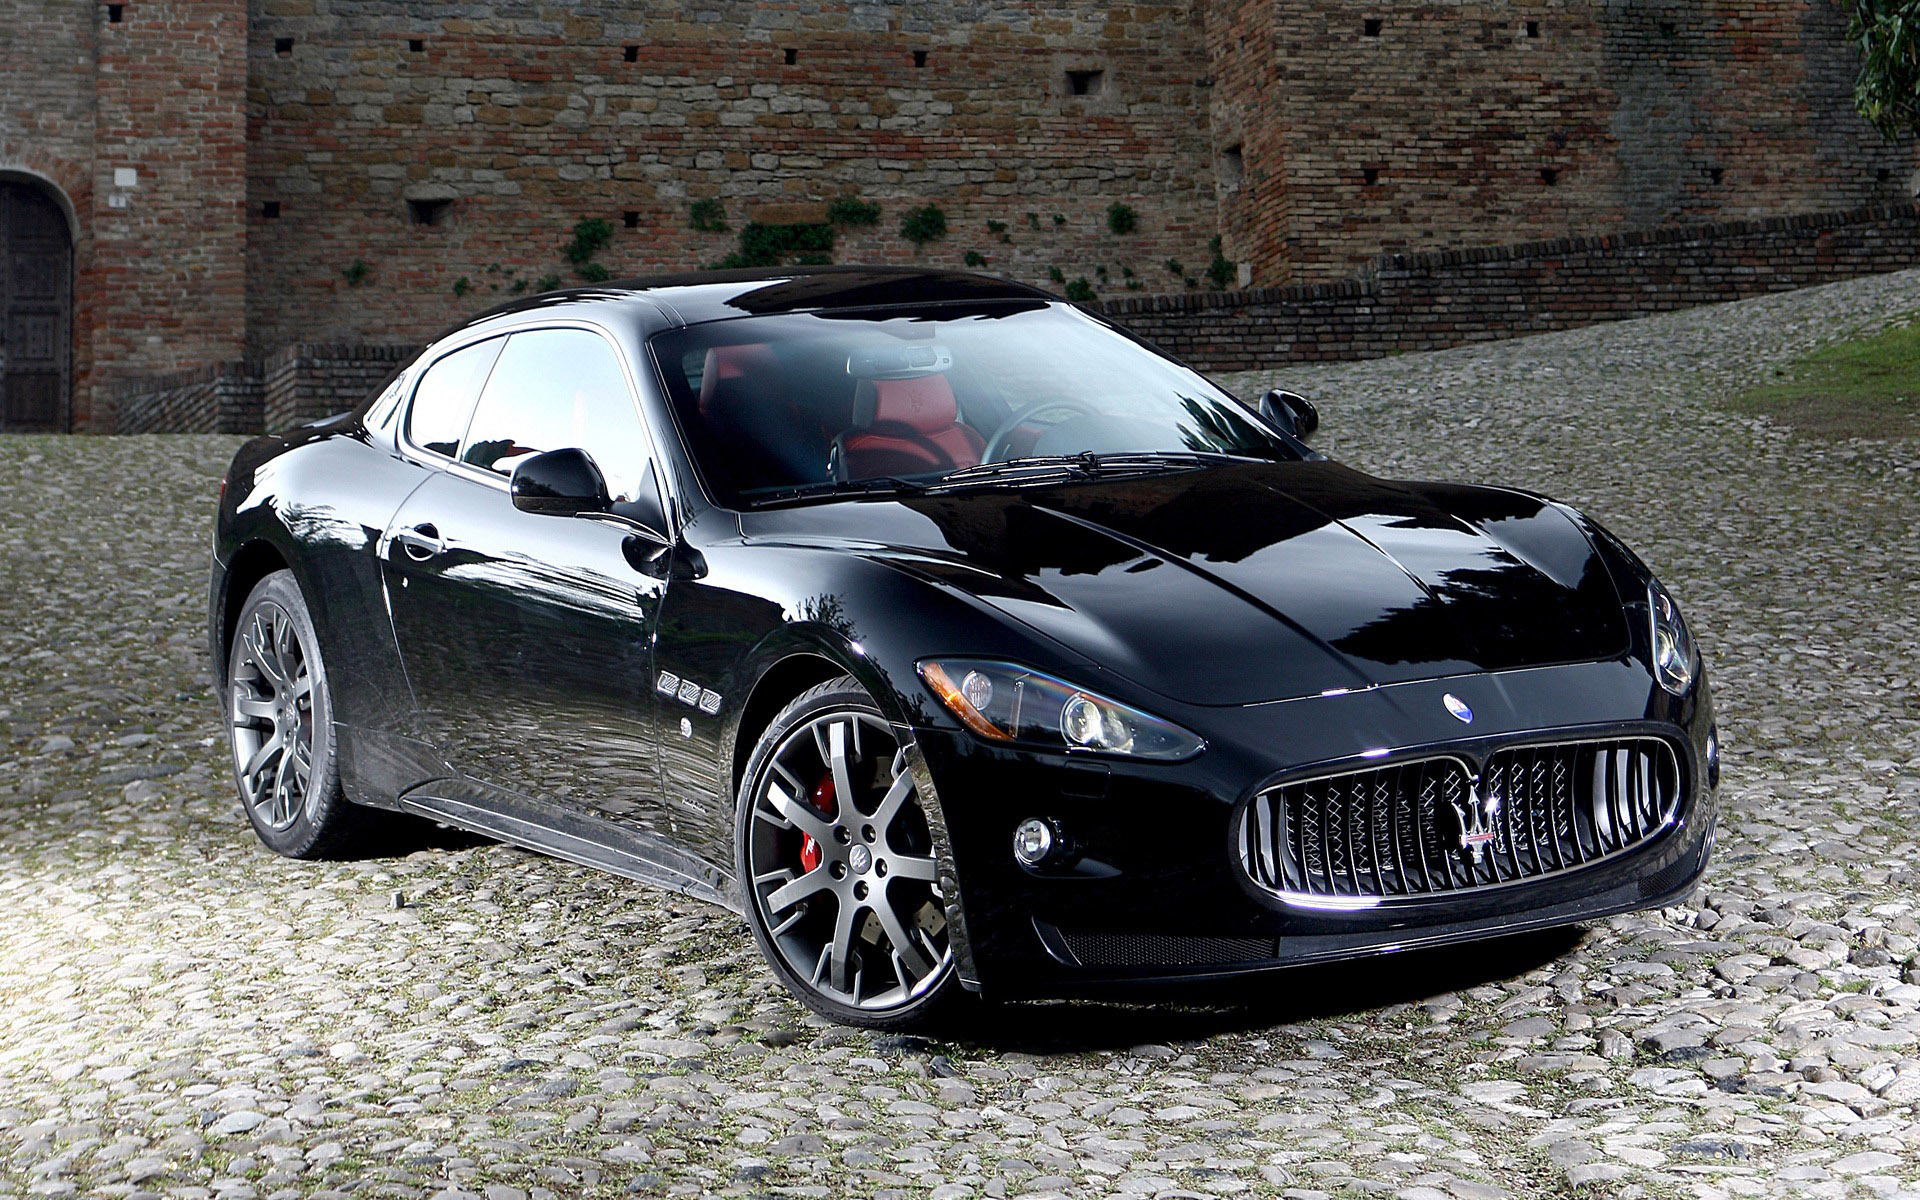 Скачать картинку Мазератти (Maserati), Транспорт, Машины в телефон бесплатно.